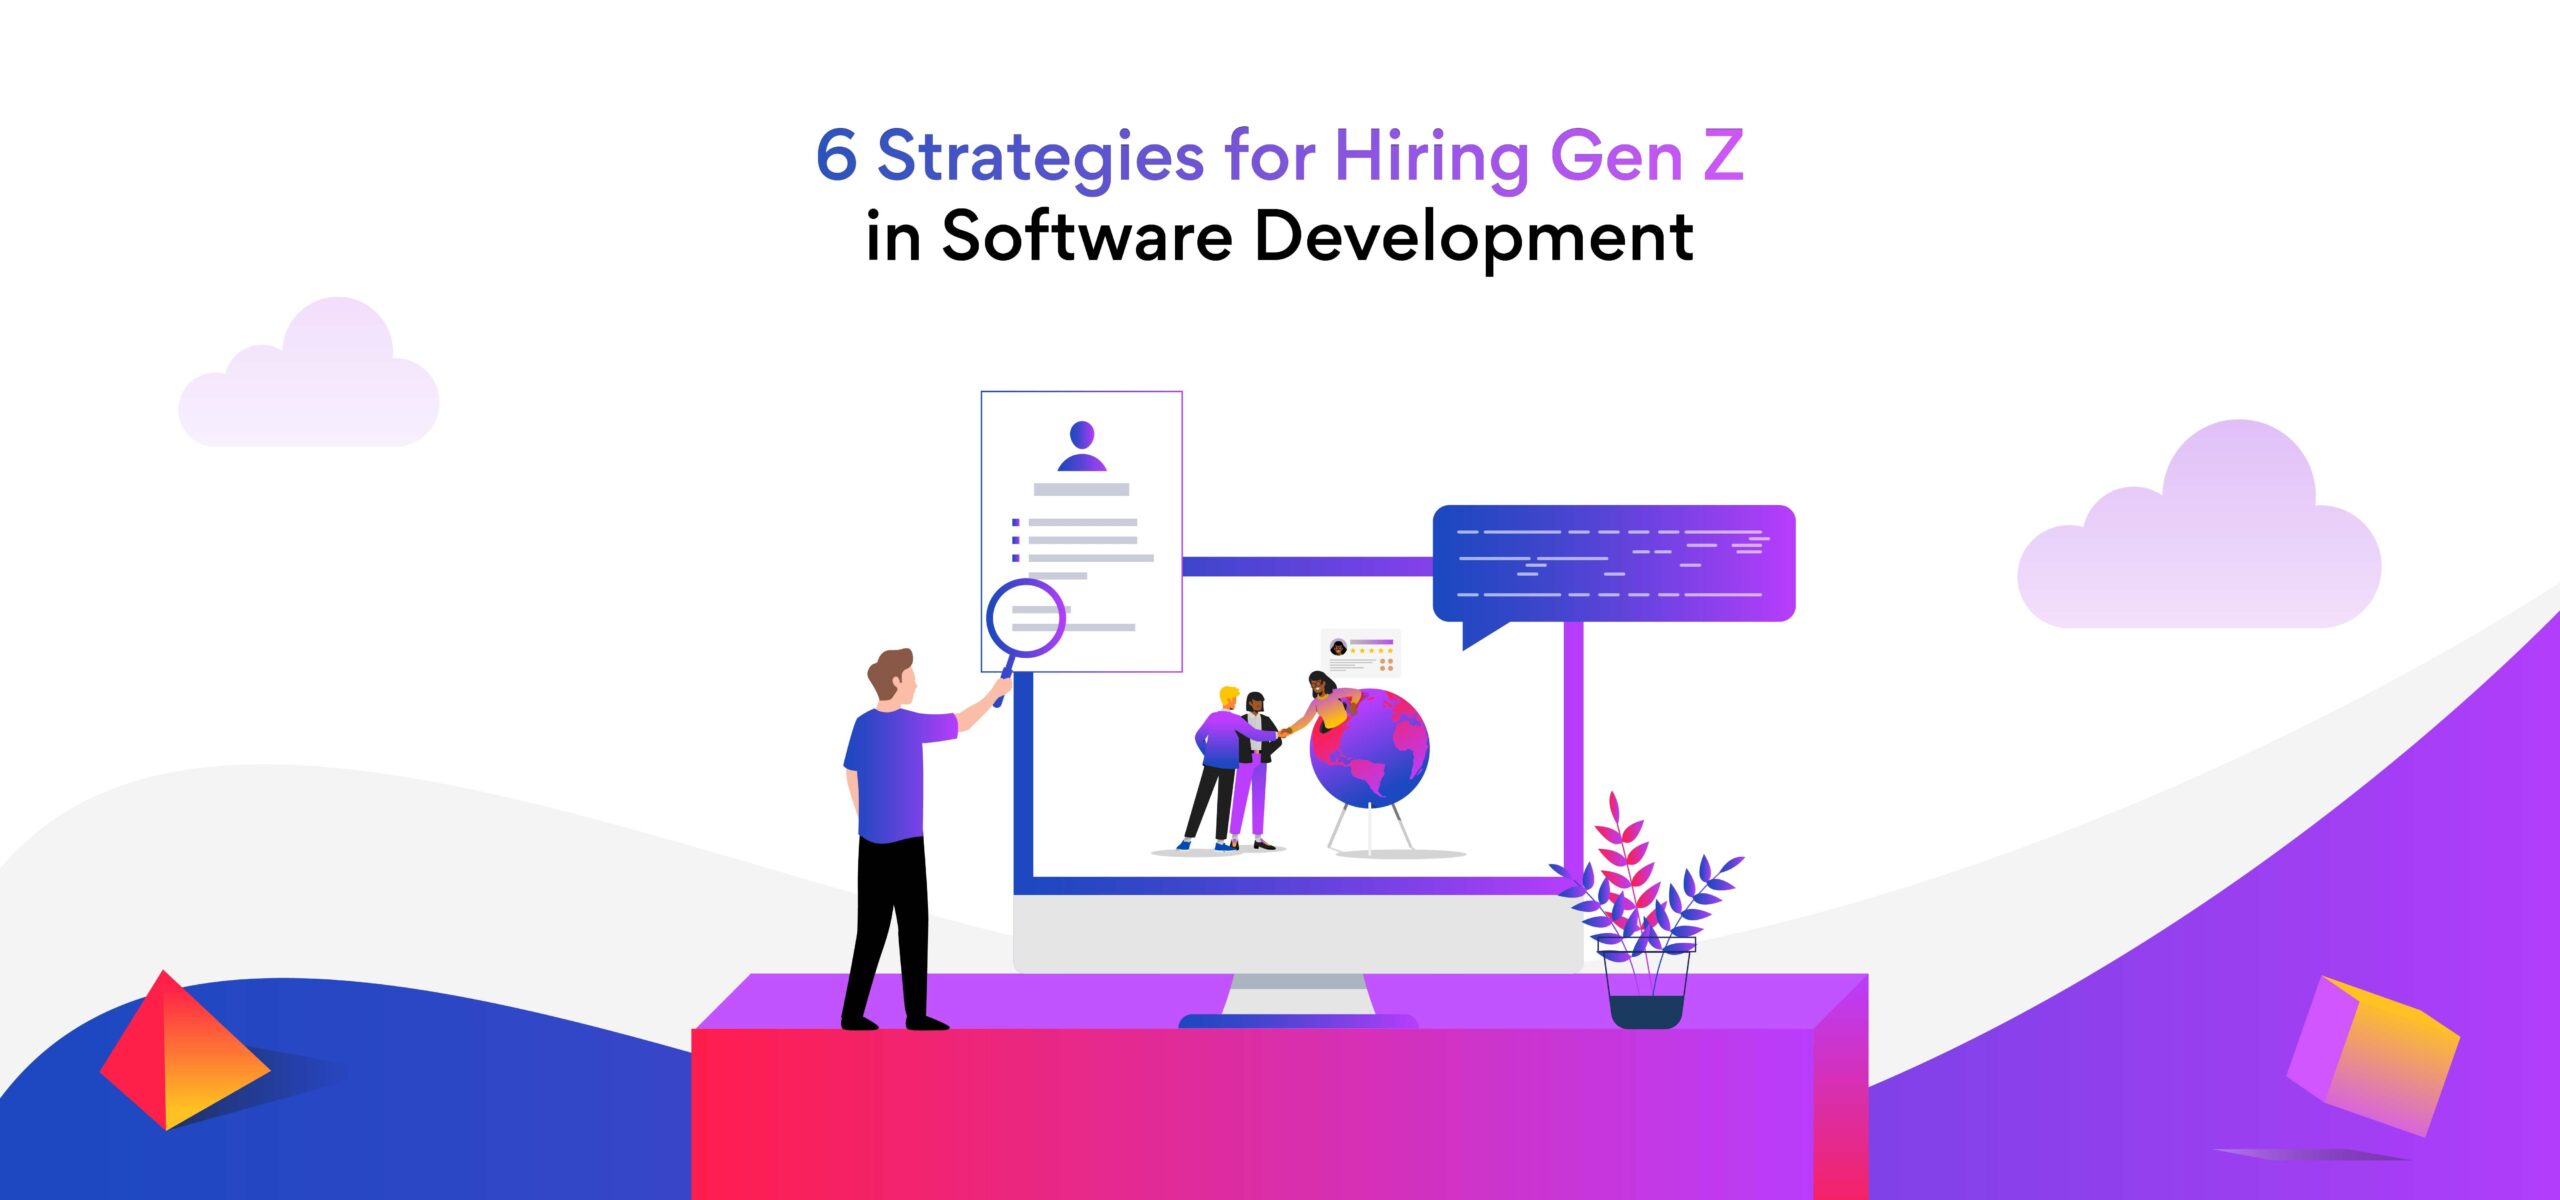 Hiring Gen Z in Software Development? 6 Steps to Follow